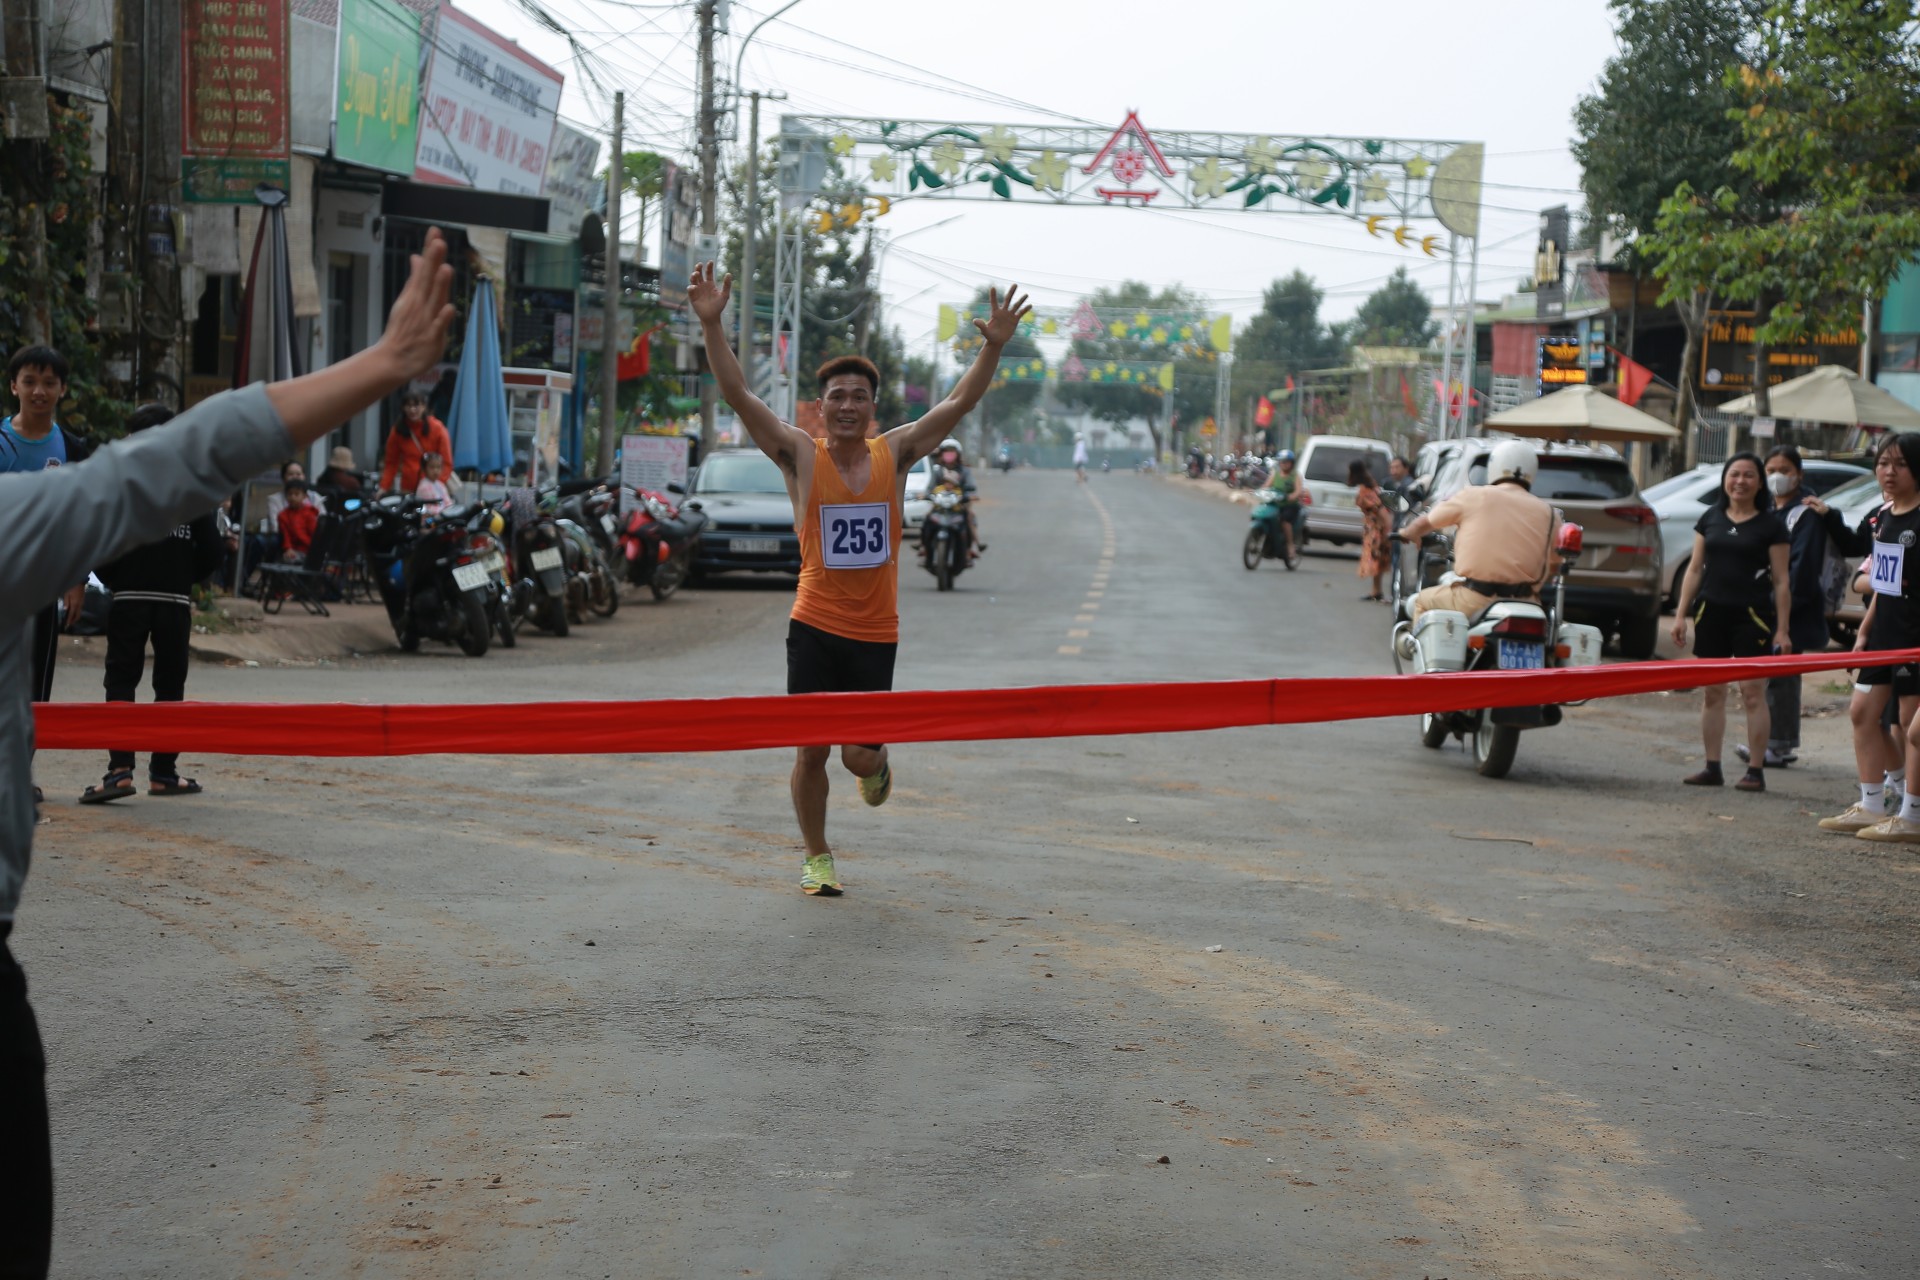 Đắk Lắk: Tổ chức chạy Việt dã hưởng ứng Lễ hội Cà phê Buôn Ma Thuột lần thứ 8 năm 2023